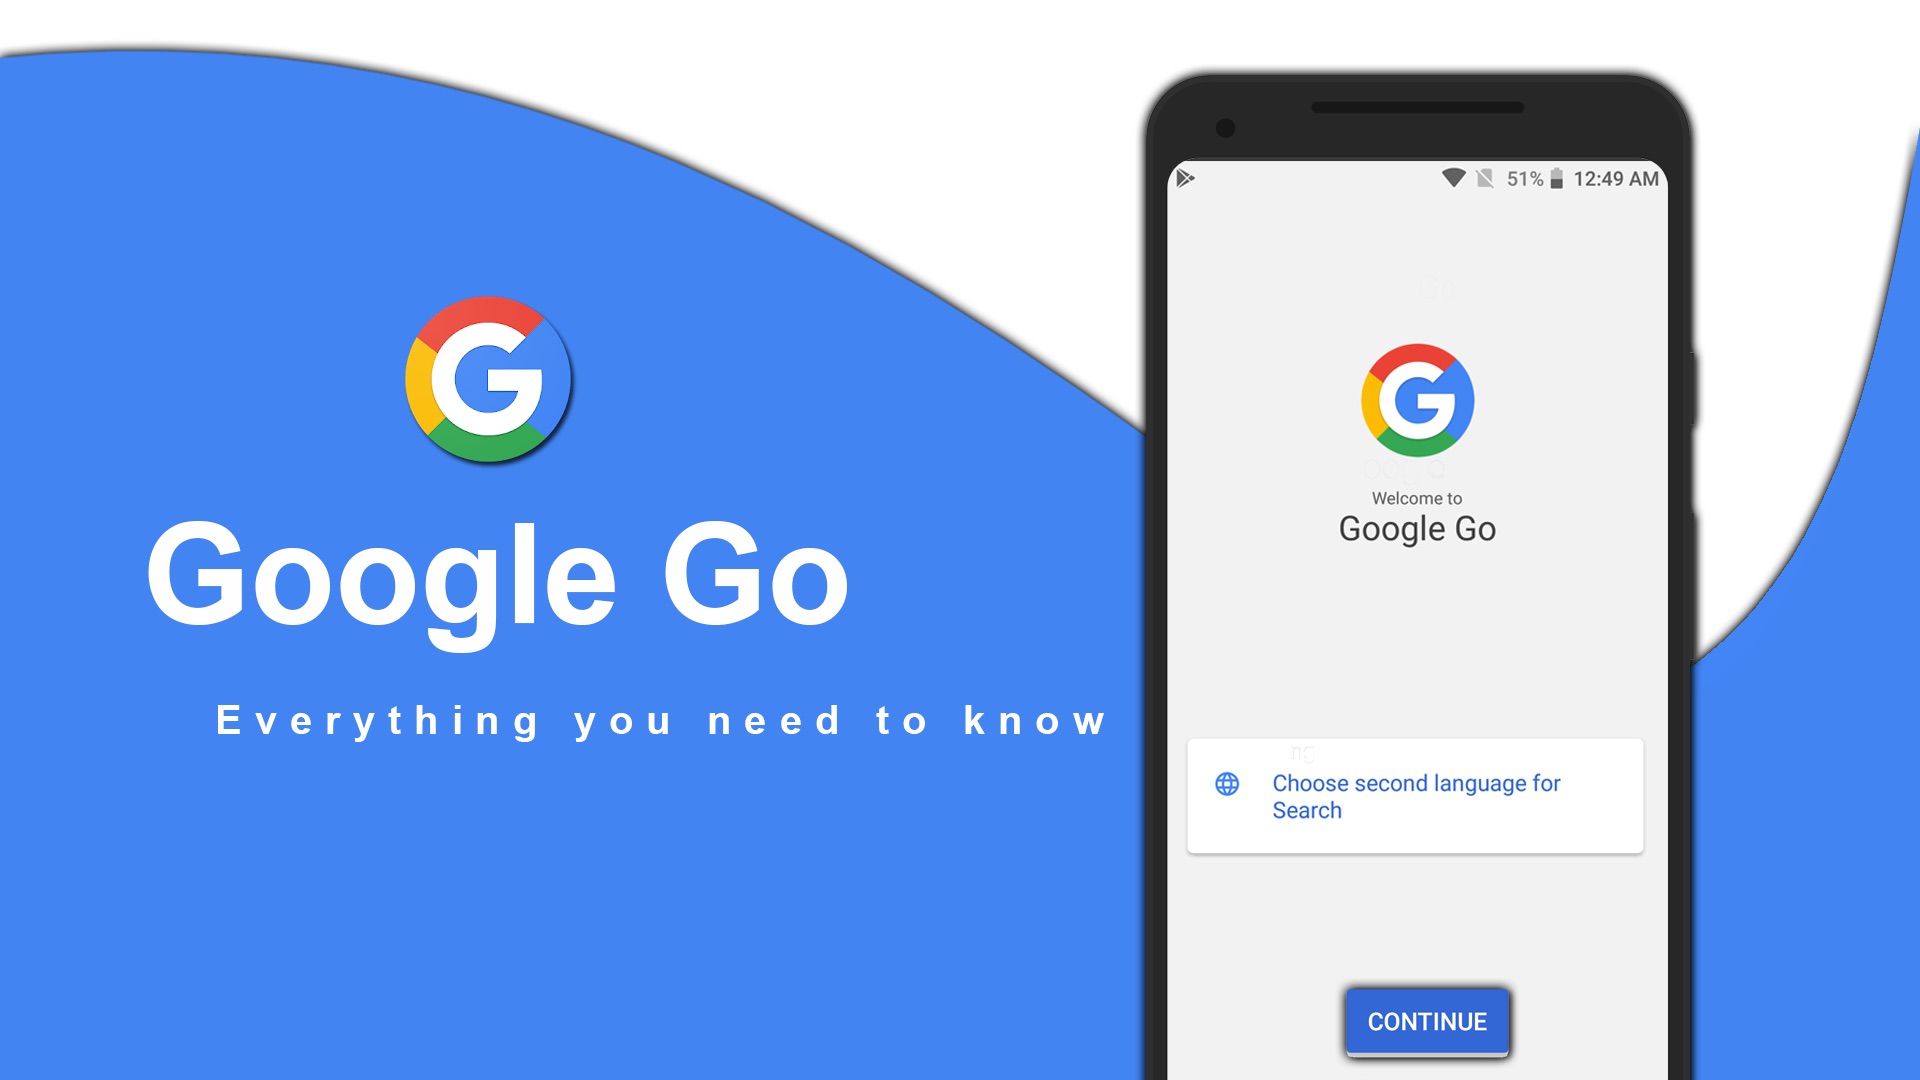 التطبيقين Google Go و Google Maps Go يكسران حاجز 10 مليون عملية تحميل